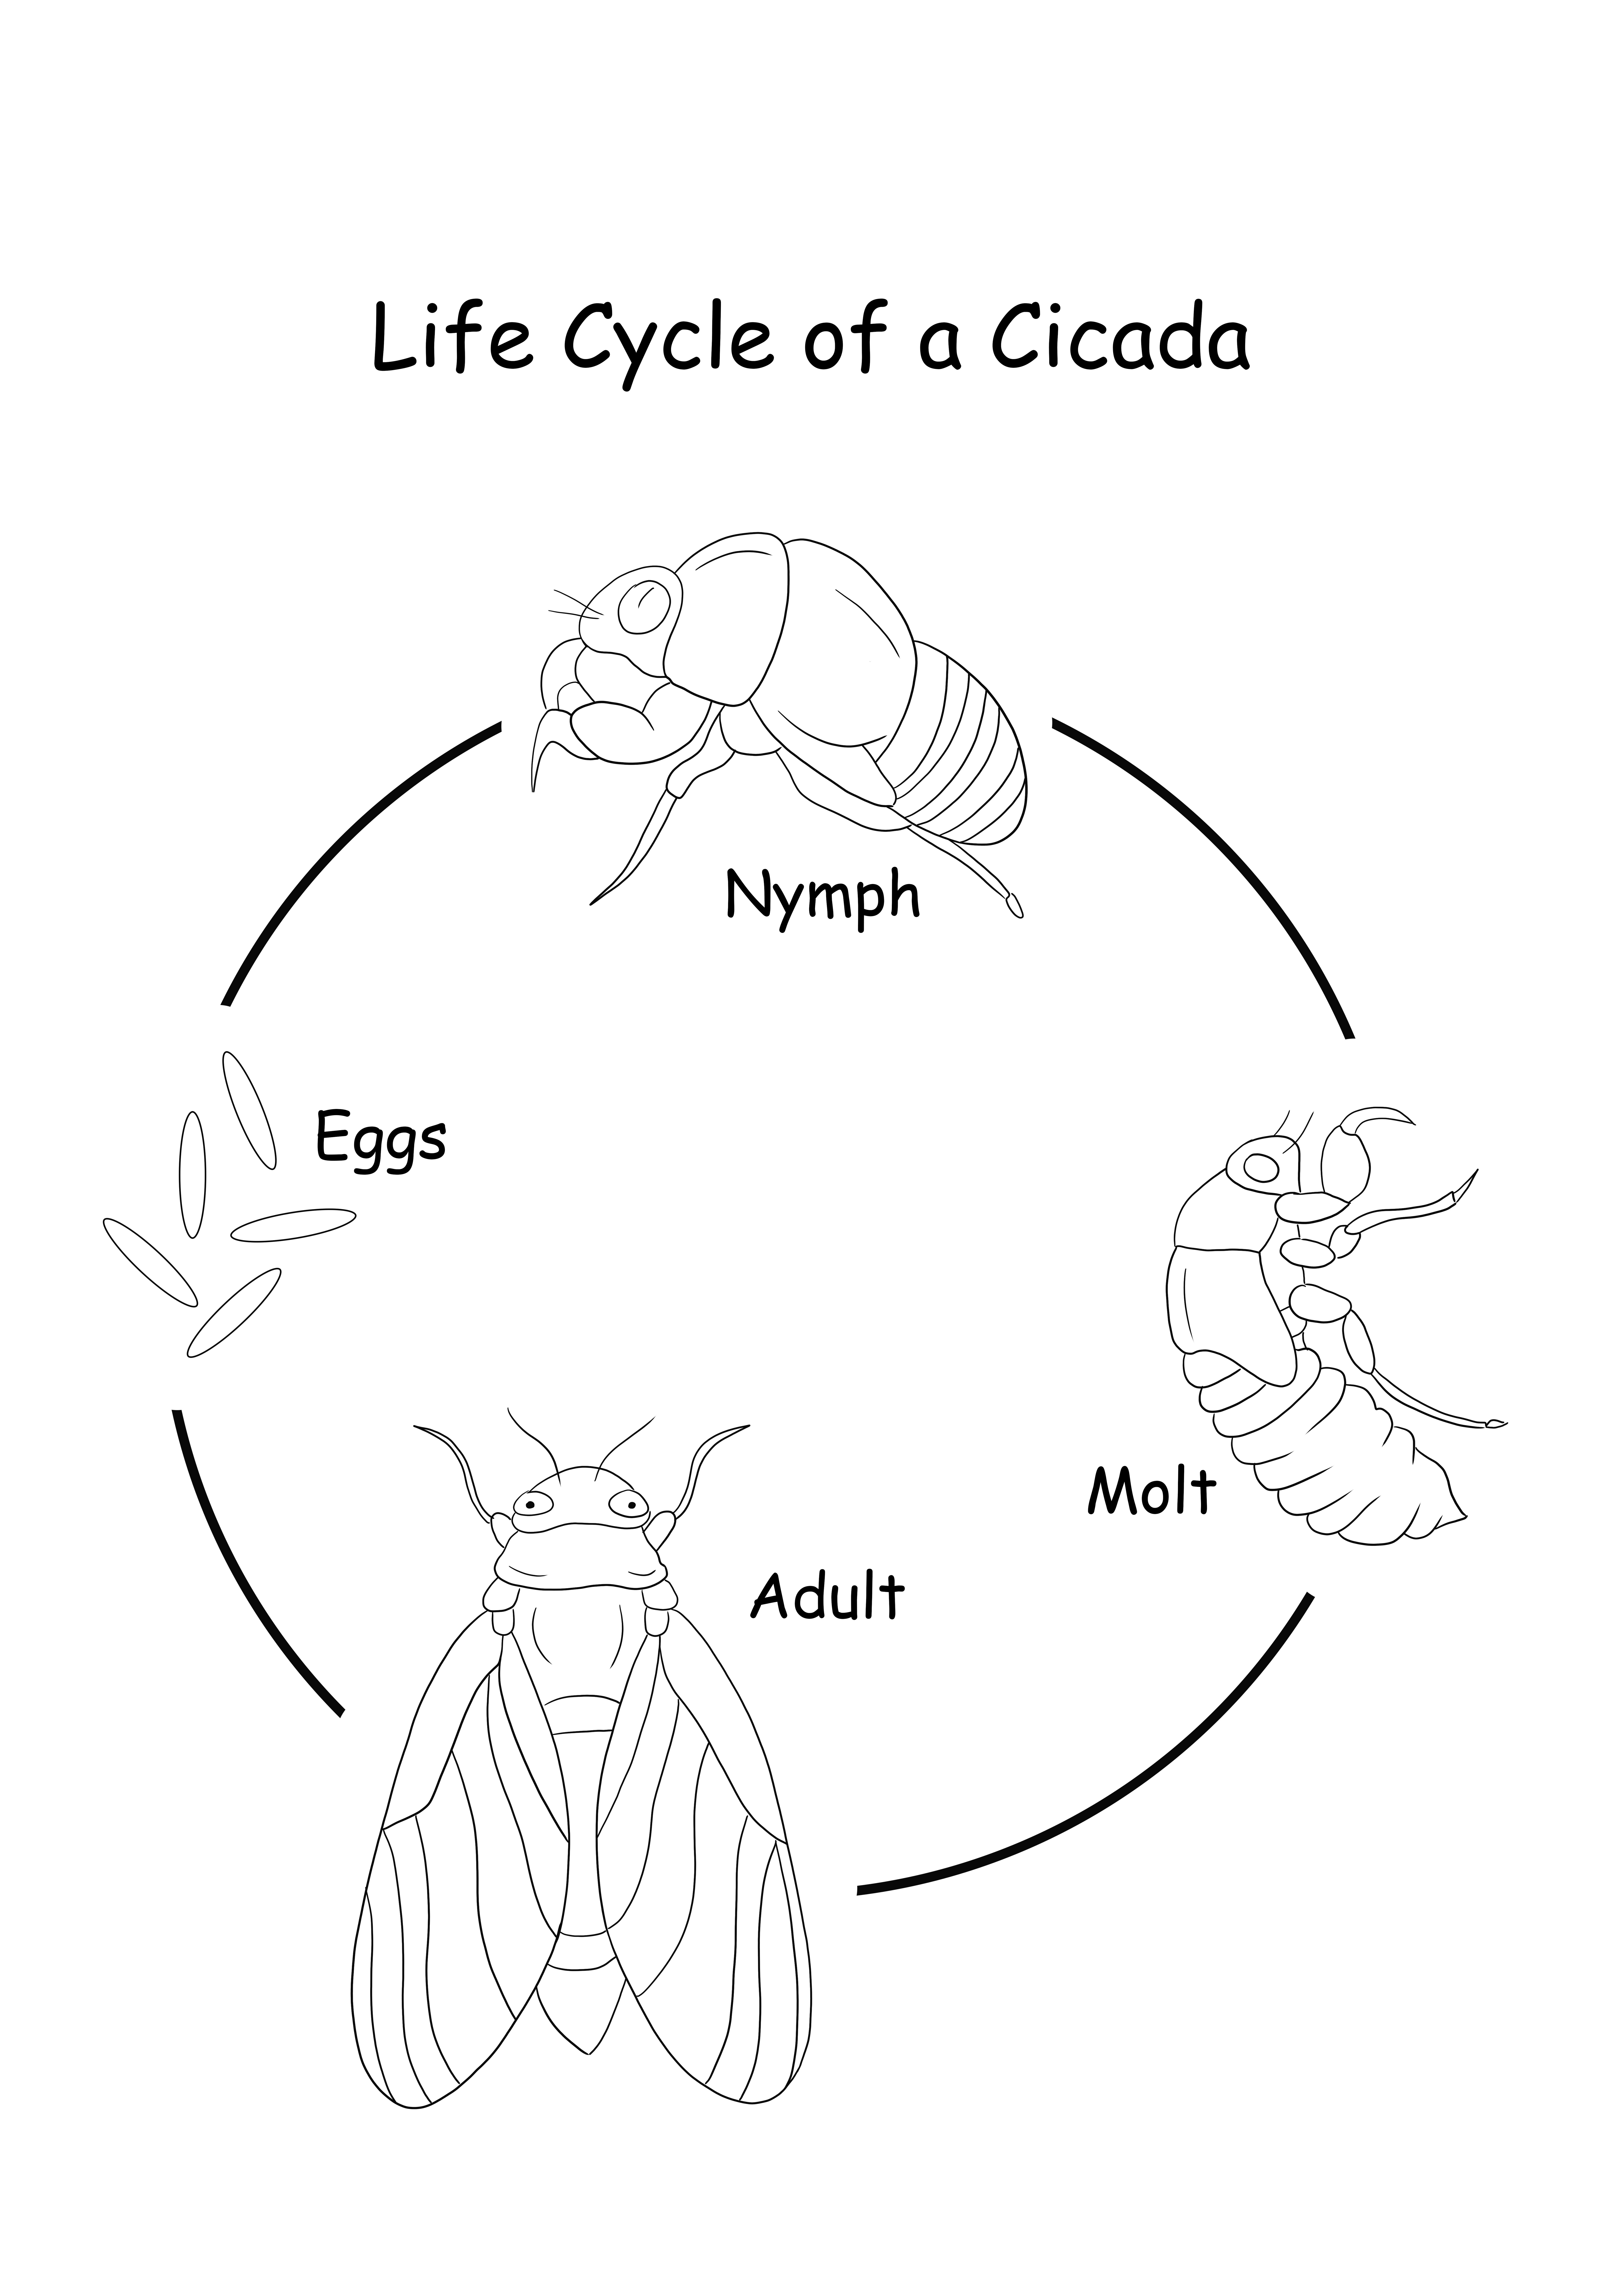 Levenscyclus van een cicade - gratis af te drukken en gratis te downloaden afbeelding kleurplaat